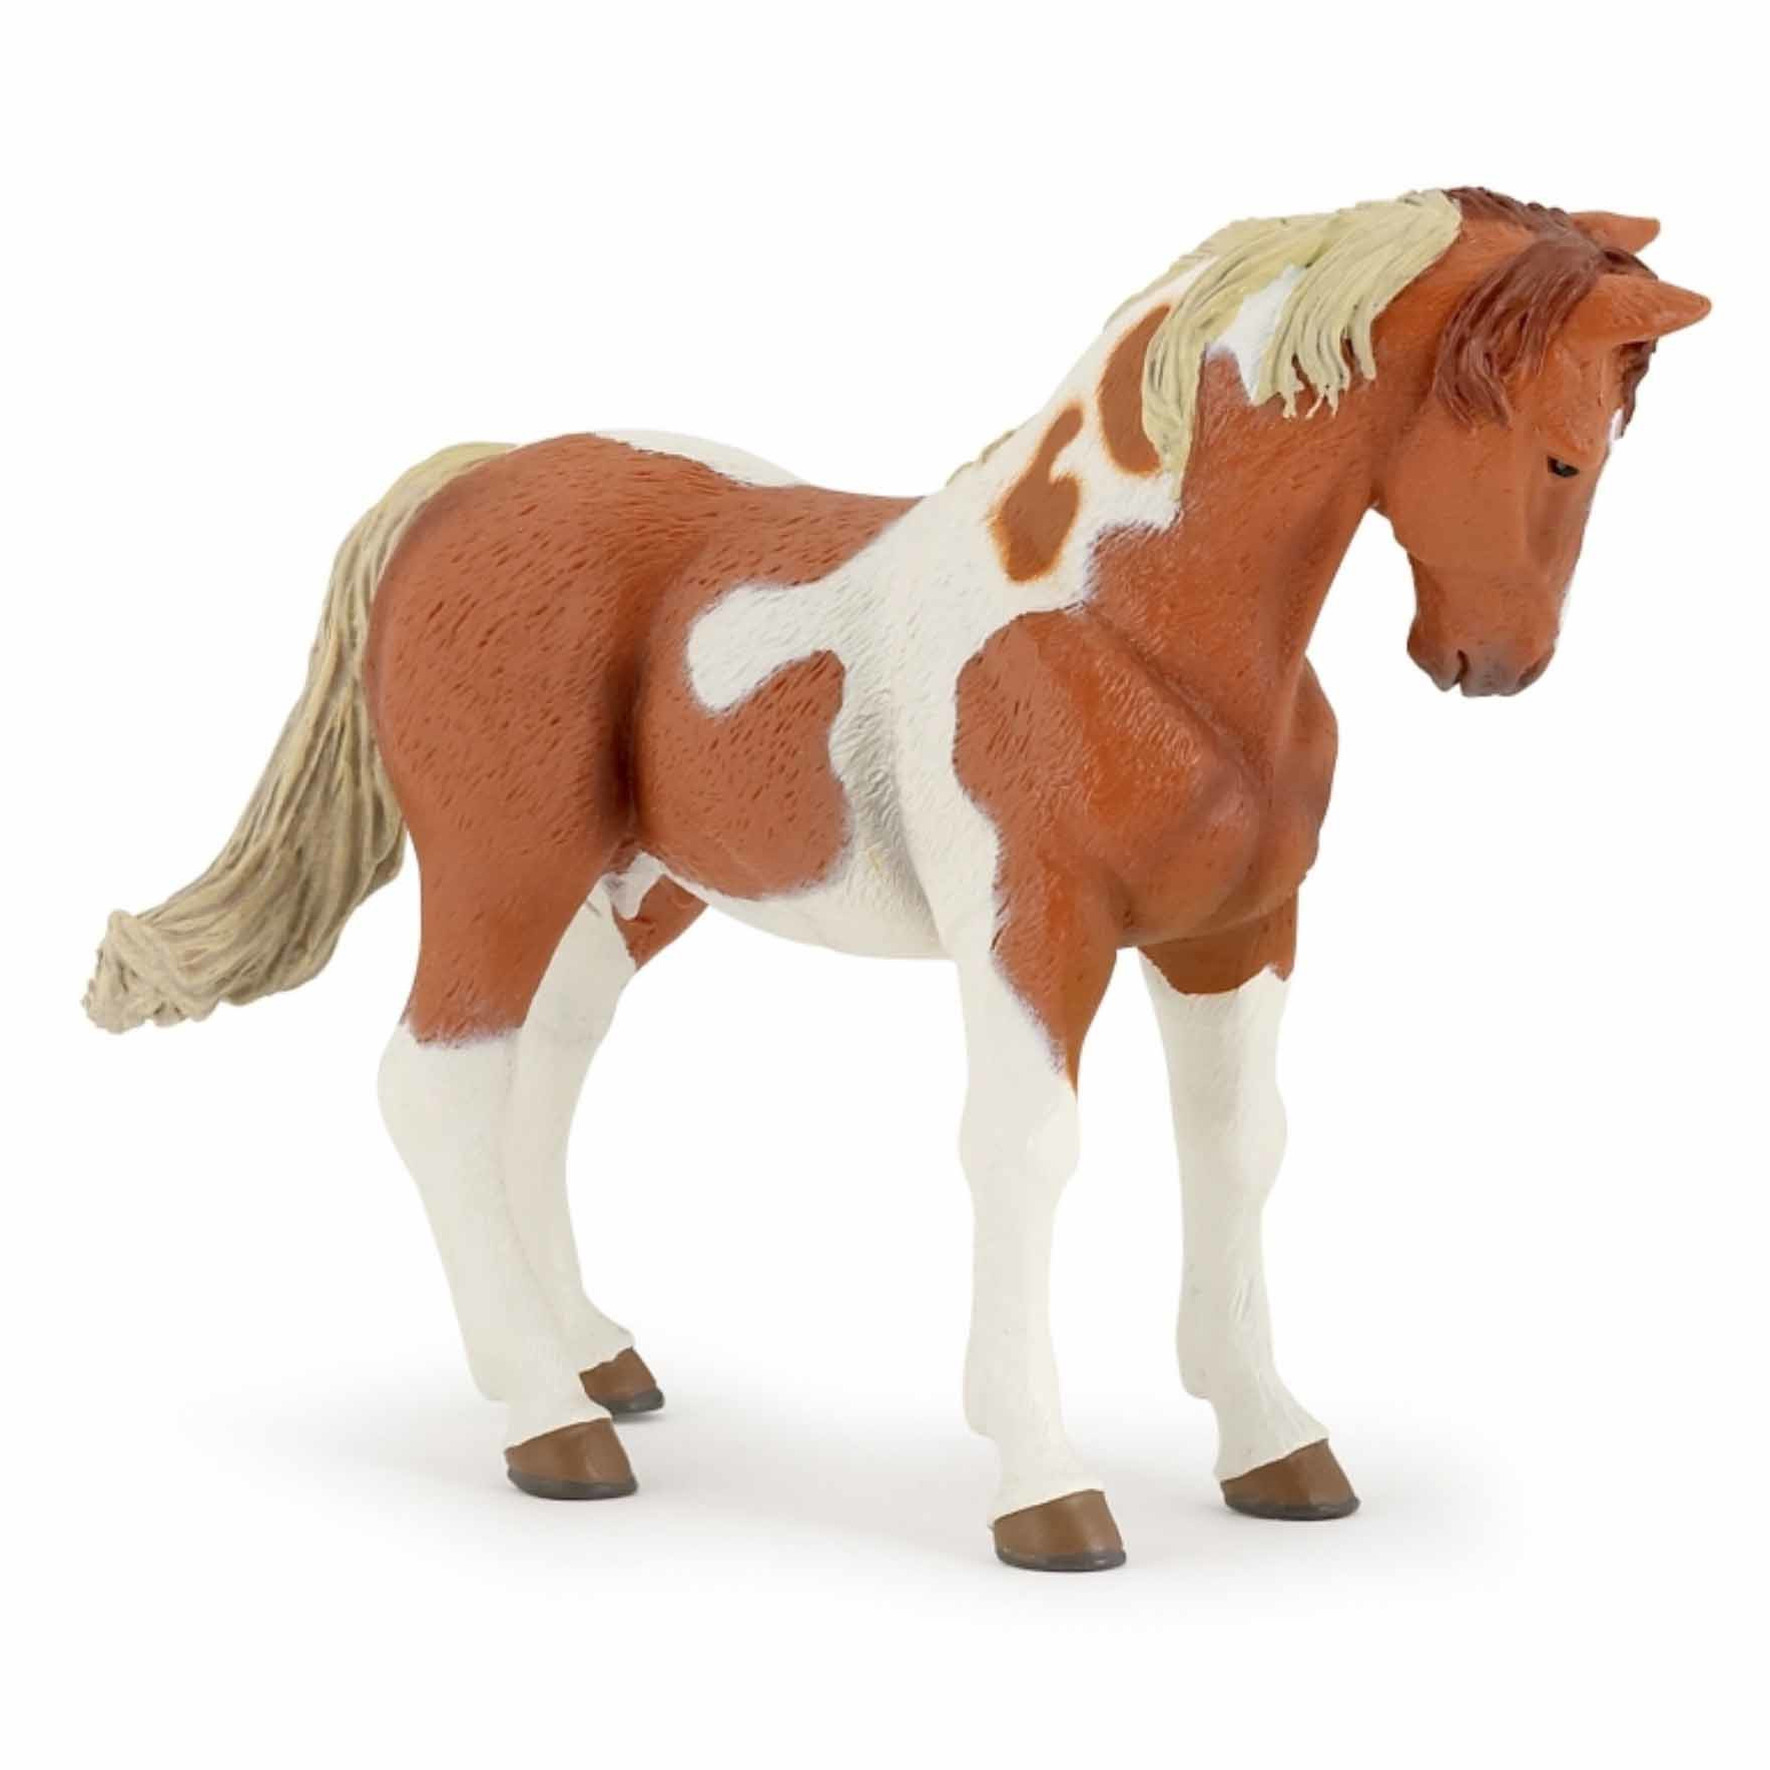 Plastic speelgoed figuur bruin-wit paard 10 cm